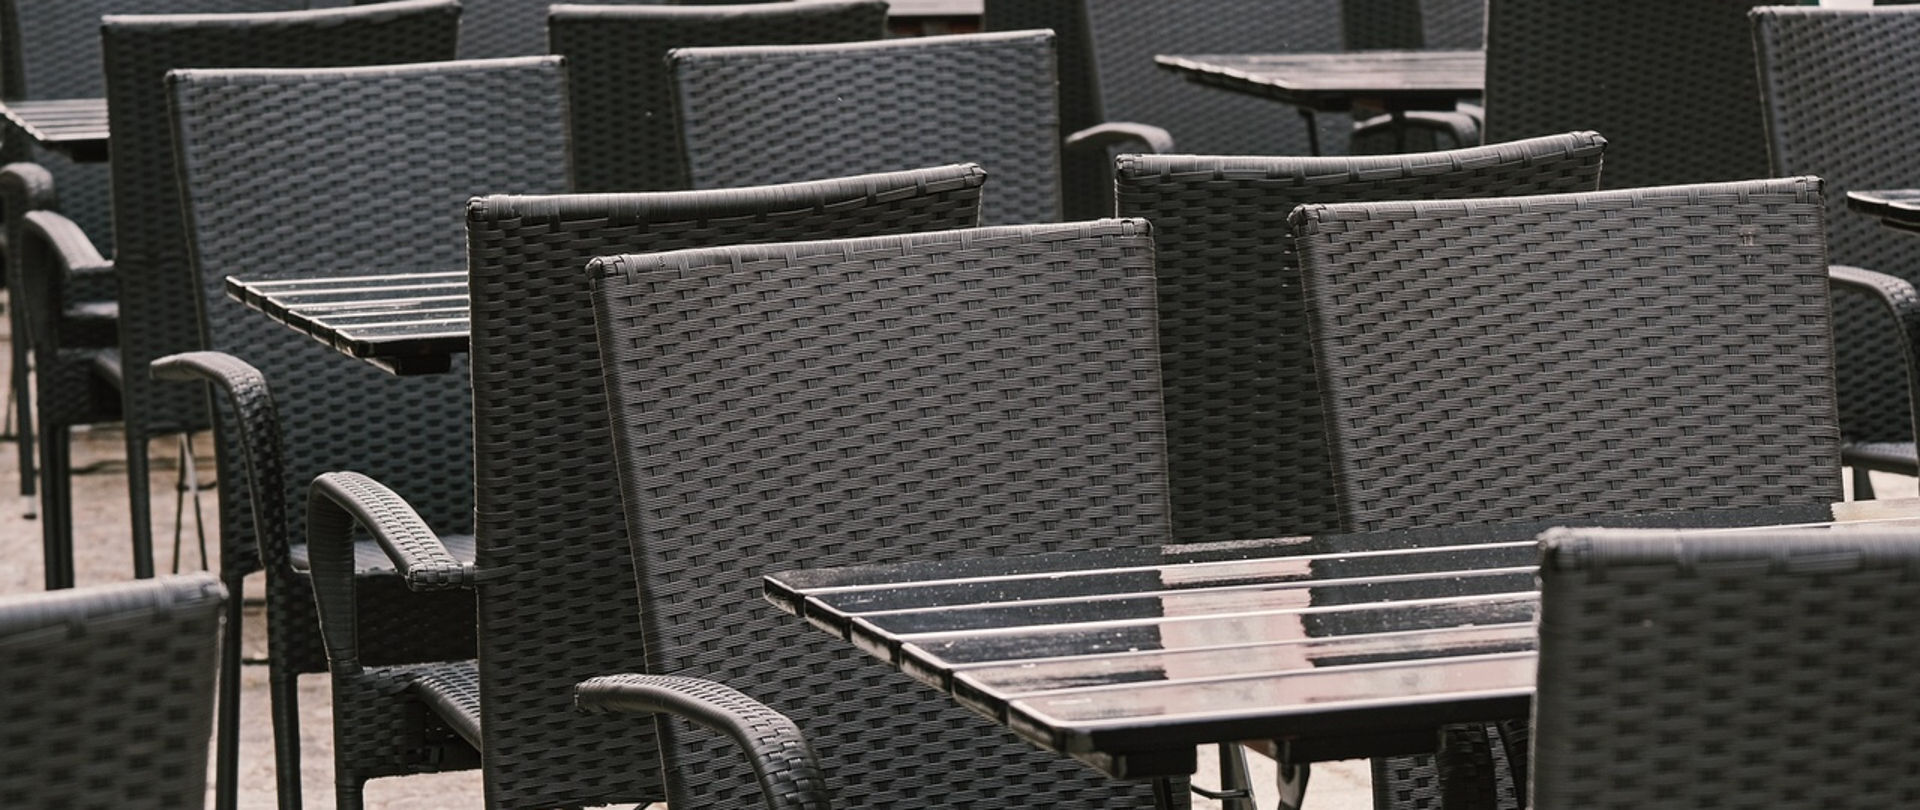 Restauracja z pustymi stolikami i krzesłami